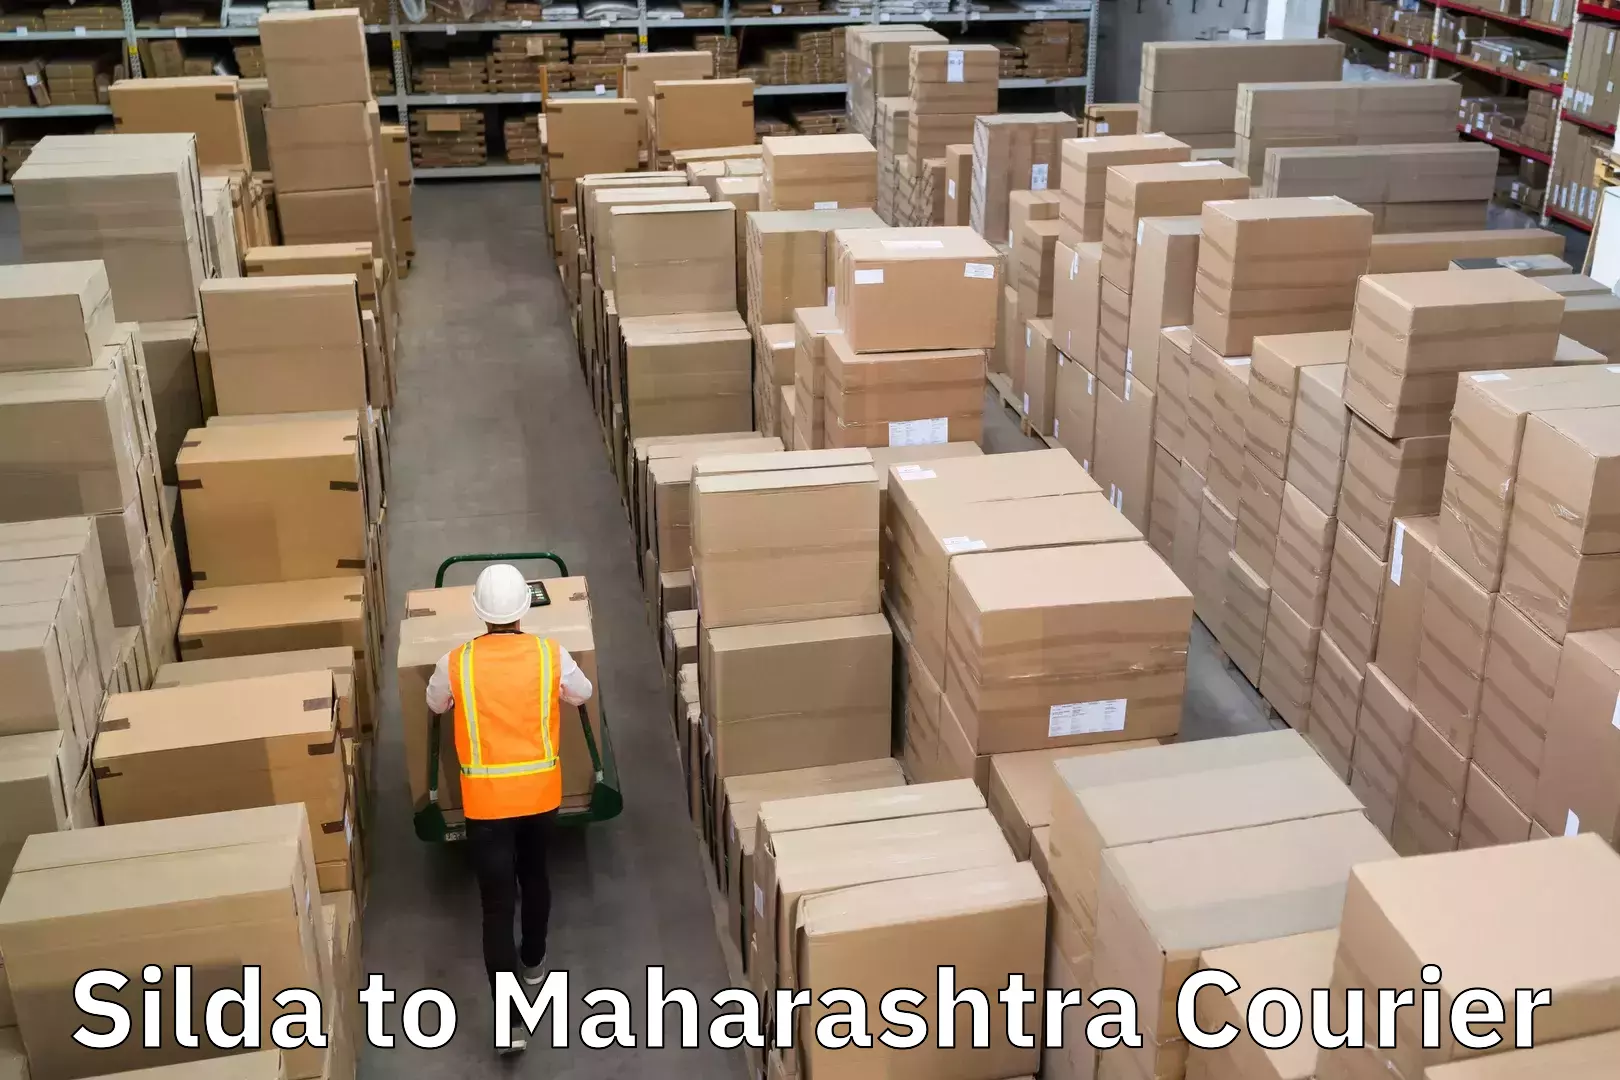 Holiday shipping services Silda to Maharashtra